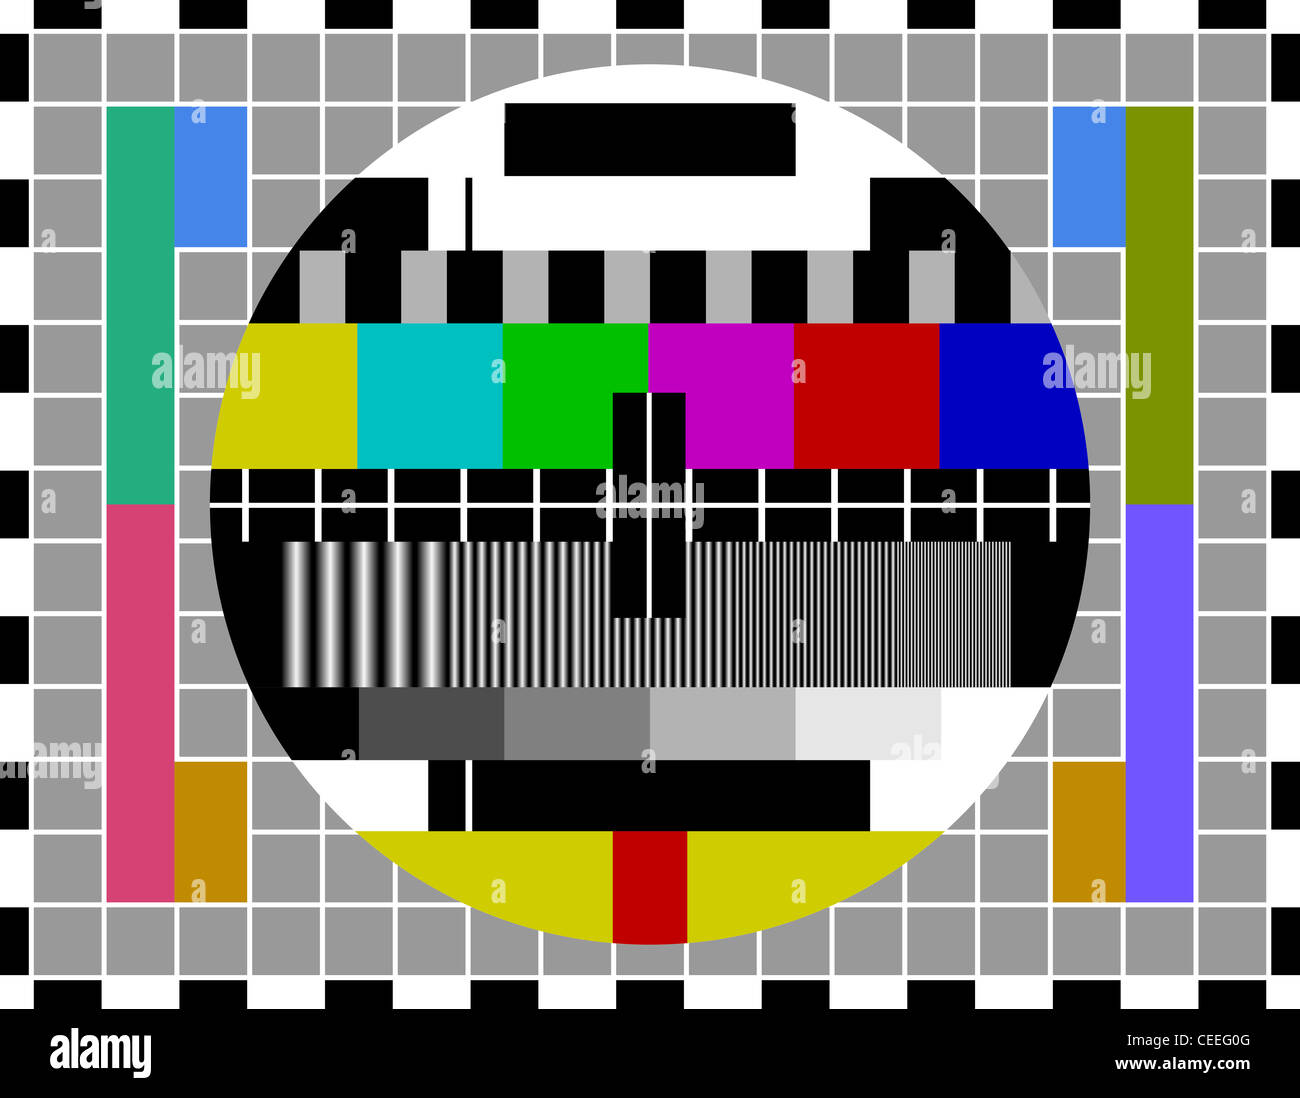 PAL-TV-Testsignal - klassische Muster zum Testen von TV-Signal-Qualität in PAL-TV-Systeme Stockfoto